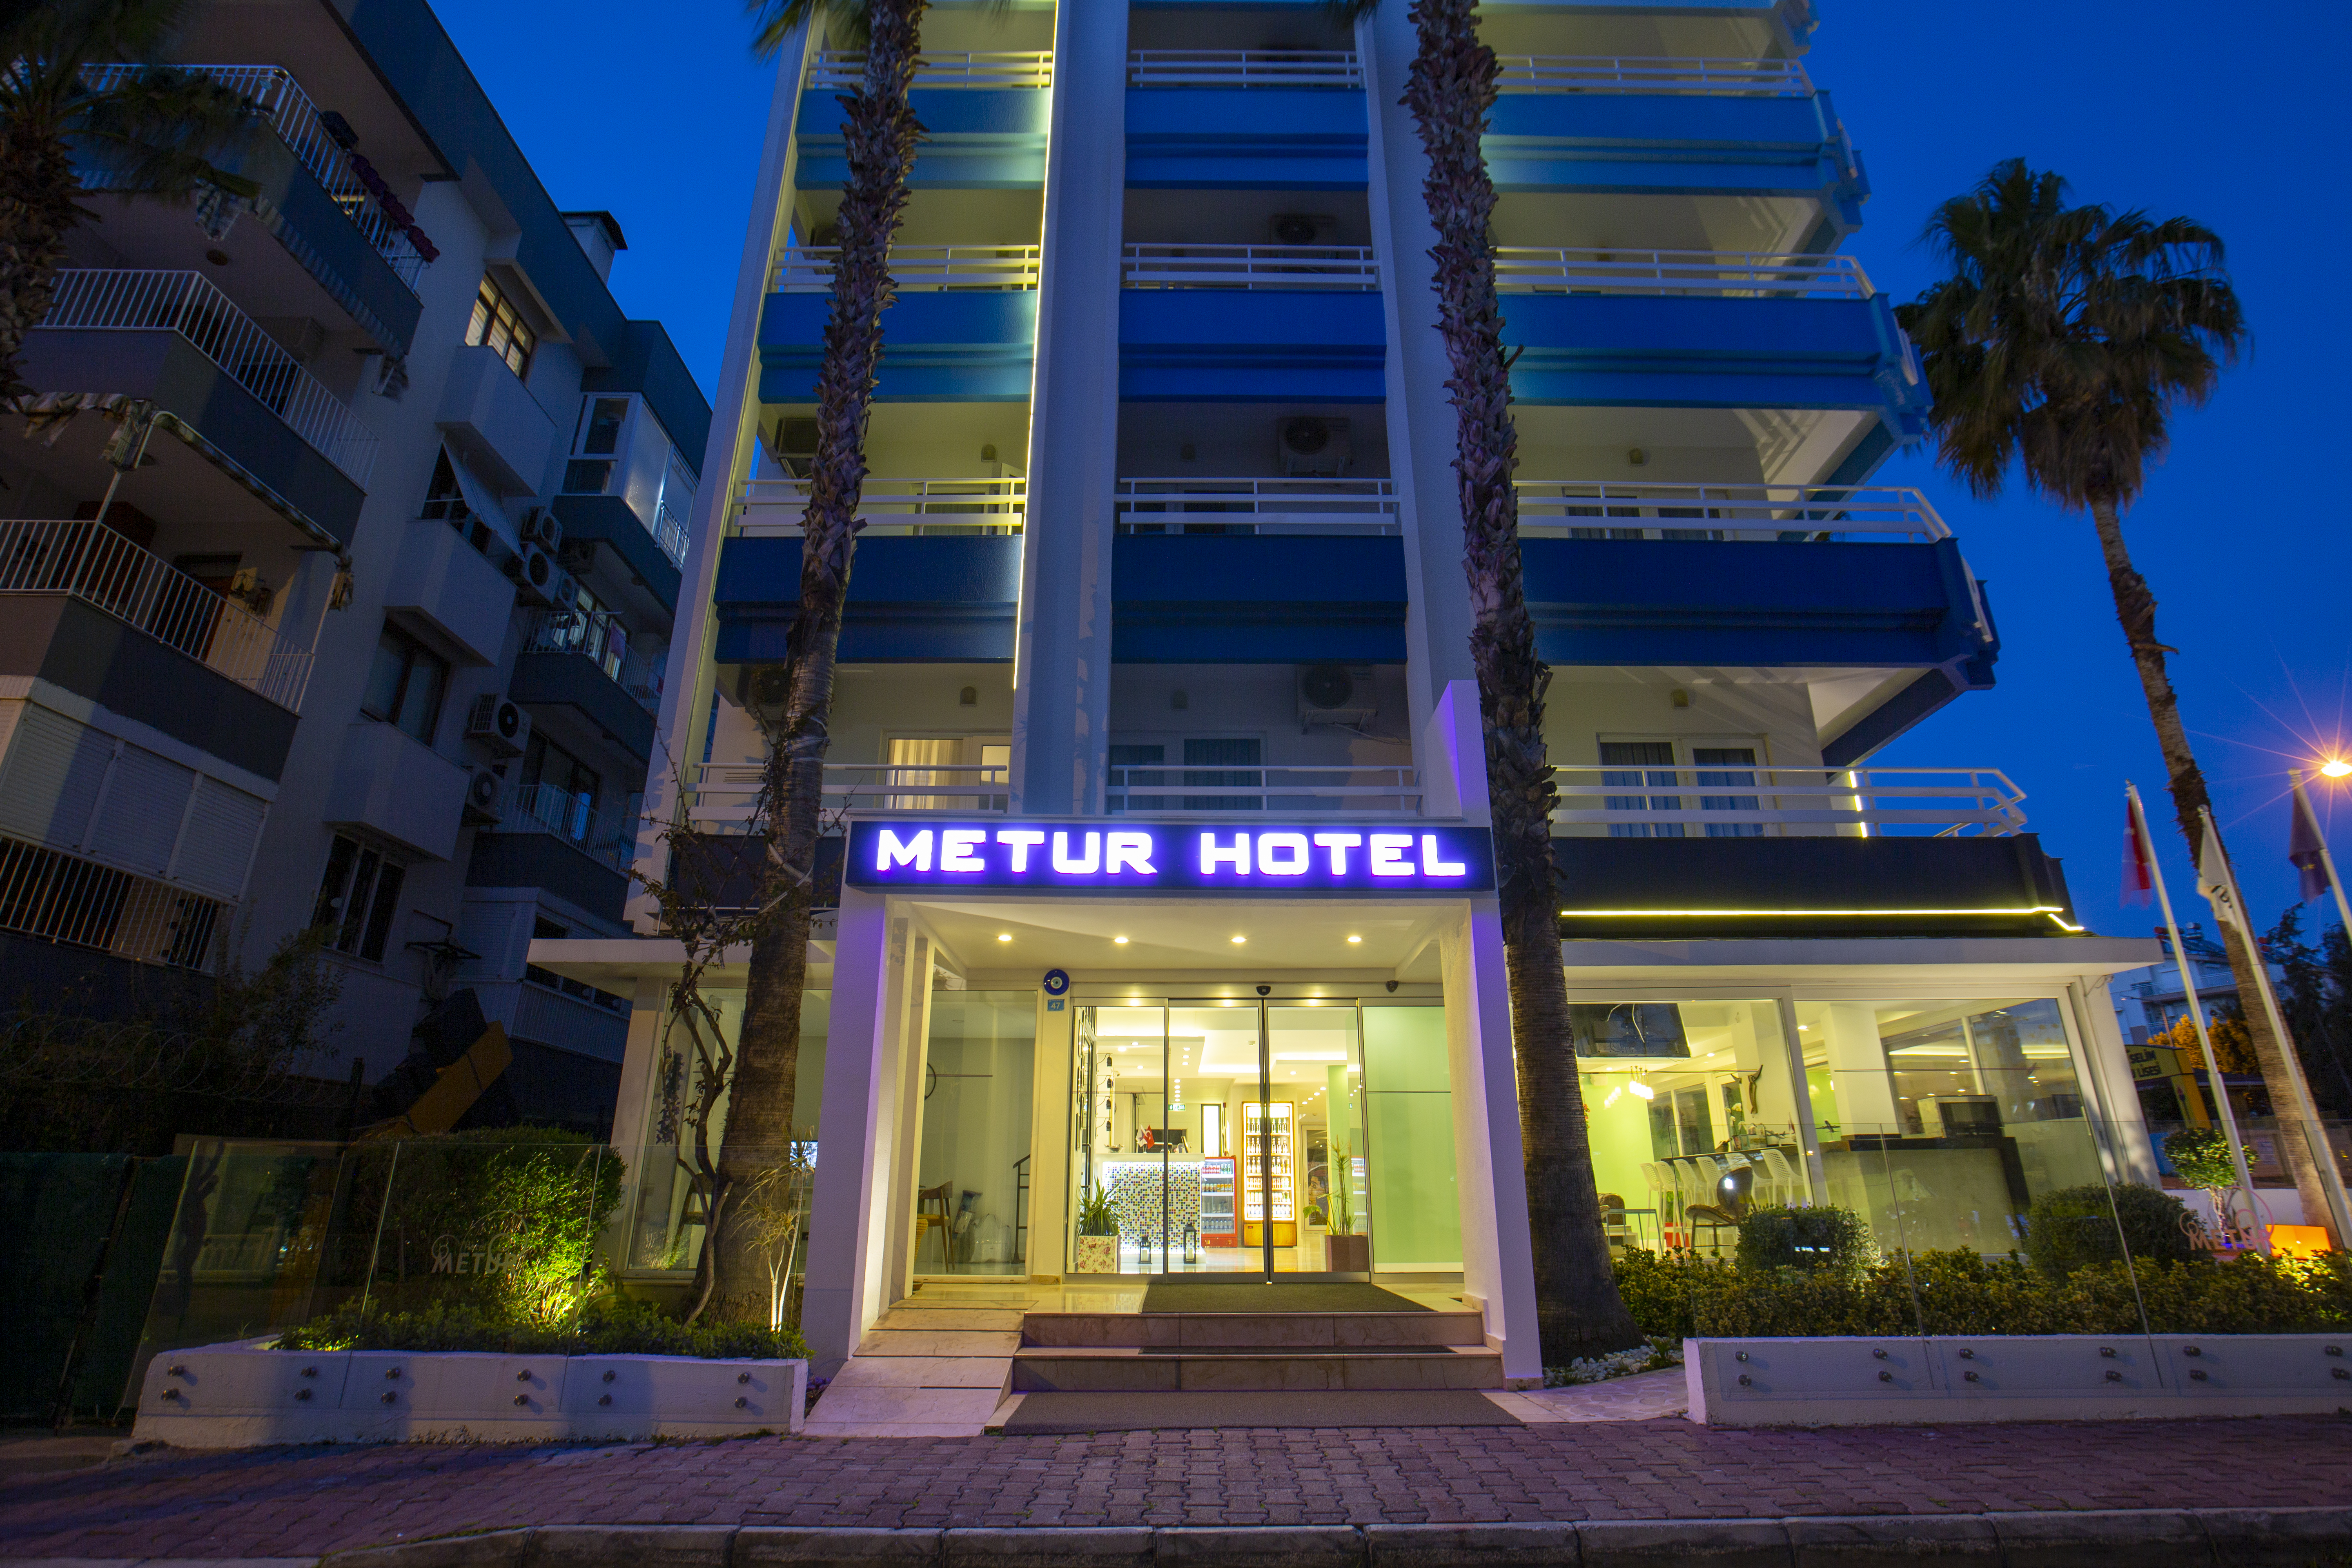 Metur Hotel